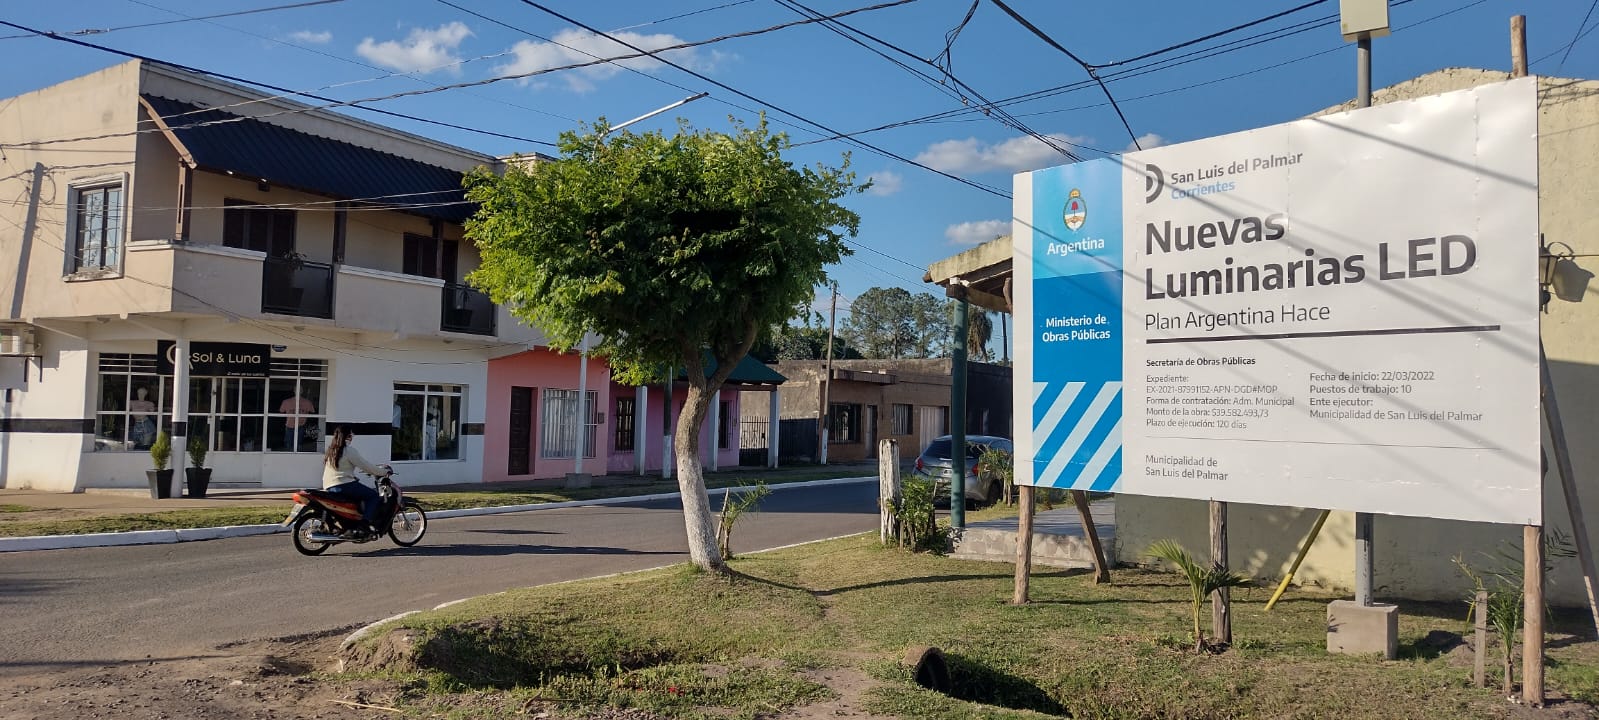 Inversión nacional de $39 millones para renovar el alumbrado publico en San Luis de Palmar